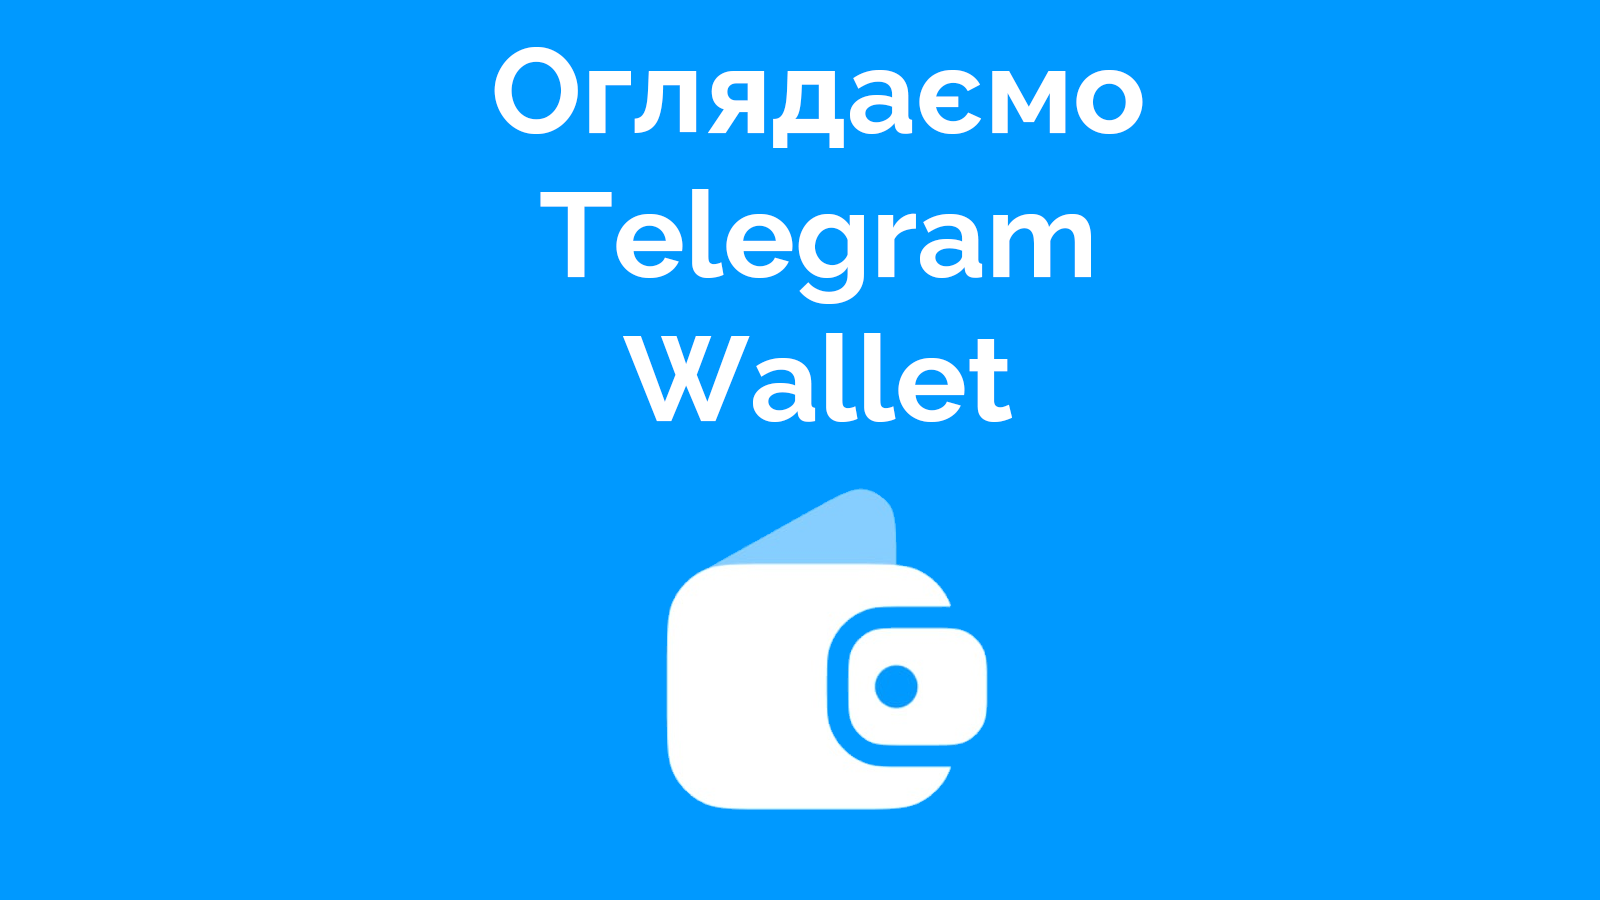 Ogljad vbudovanogo kryptogamancja Telegram: koncept krutyj, realizacija ne duže